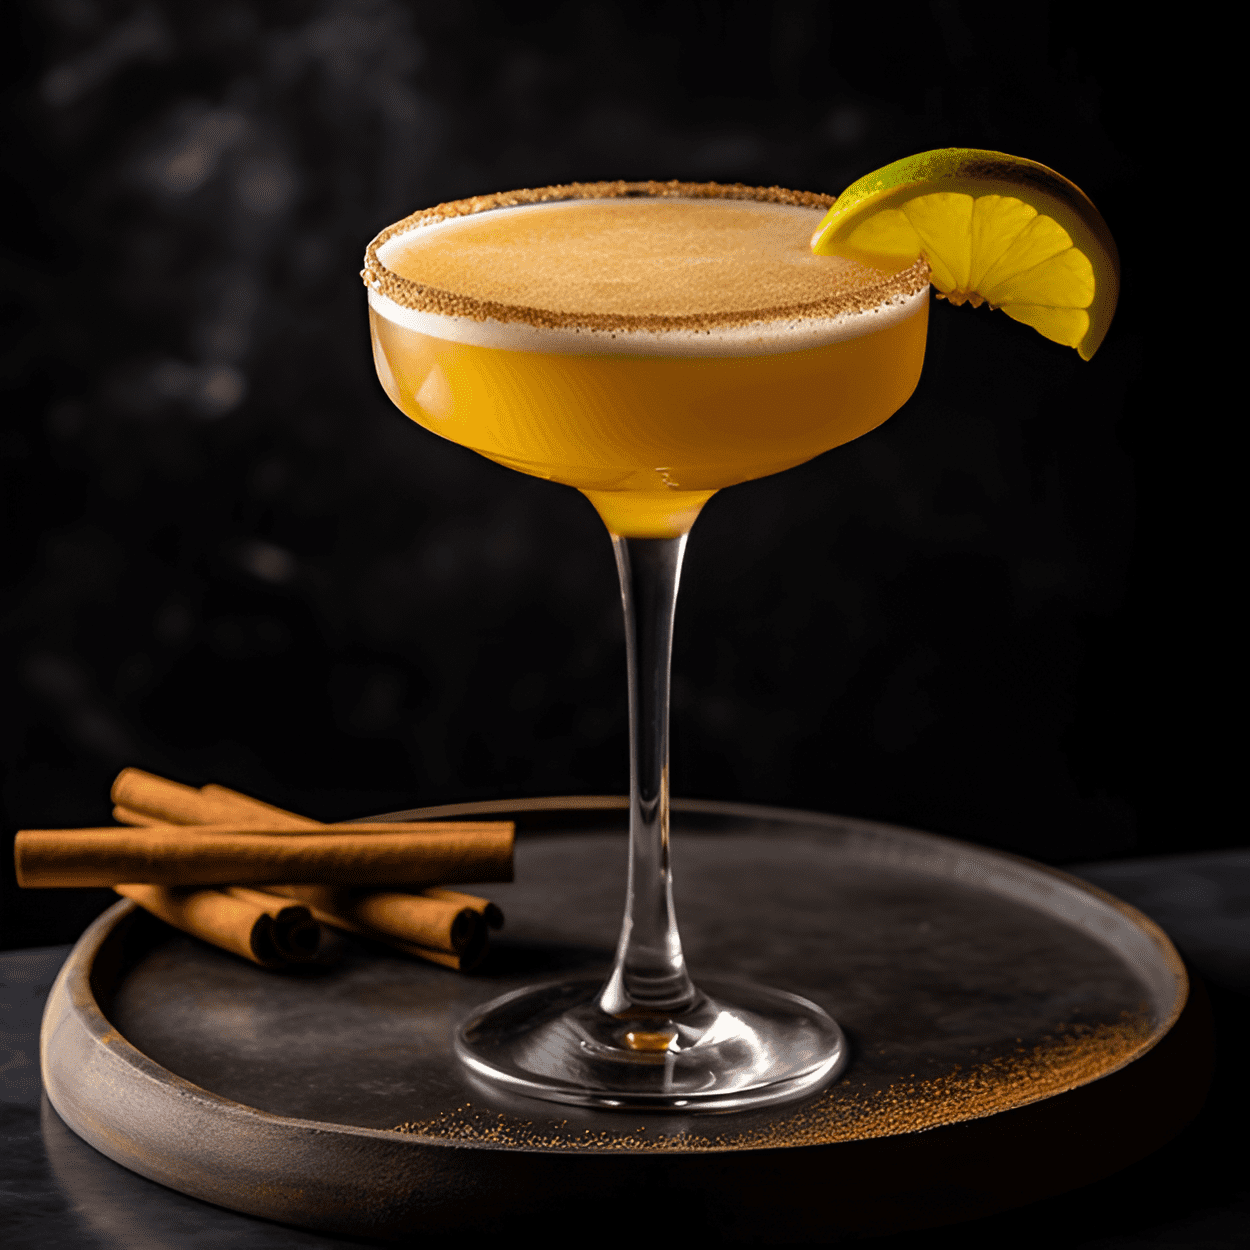 El cóctel Infante es una deliciosa mezcla de dulce, agrio y picante. El tequila proporciona una base robusta, el orgeat agrega un dulce sabor a almendra, el jugo de lima le da un toque picante y la nuez moscada agrega un final cálido y picante.